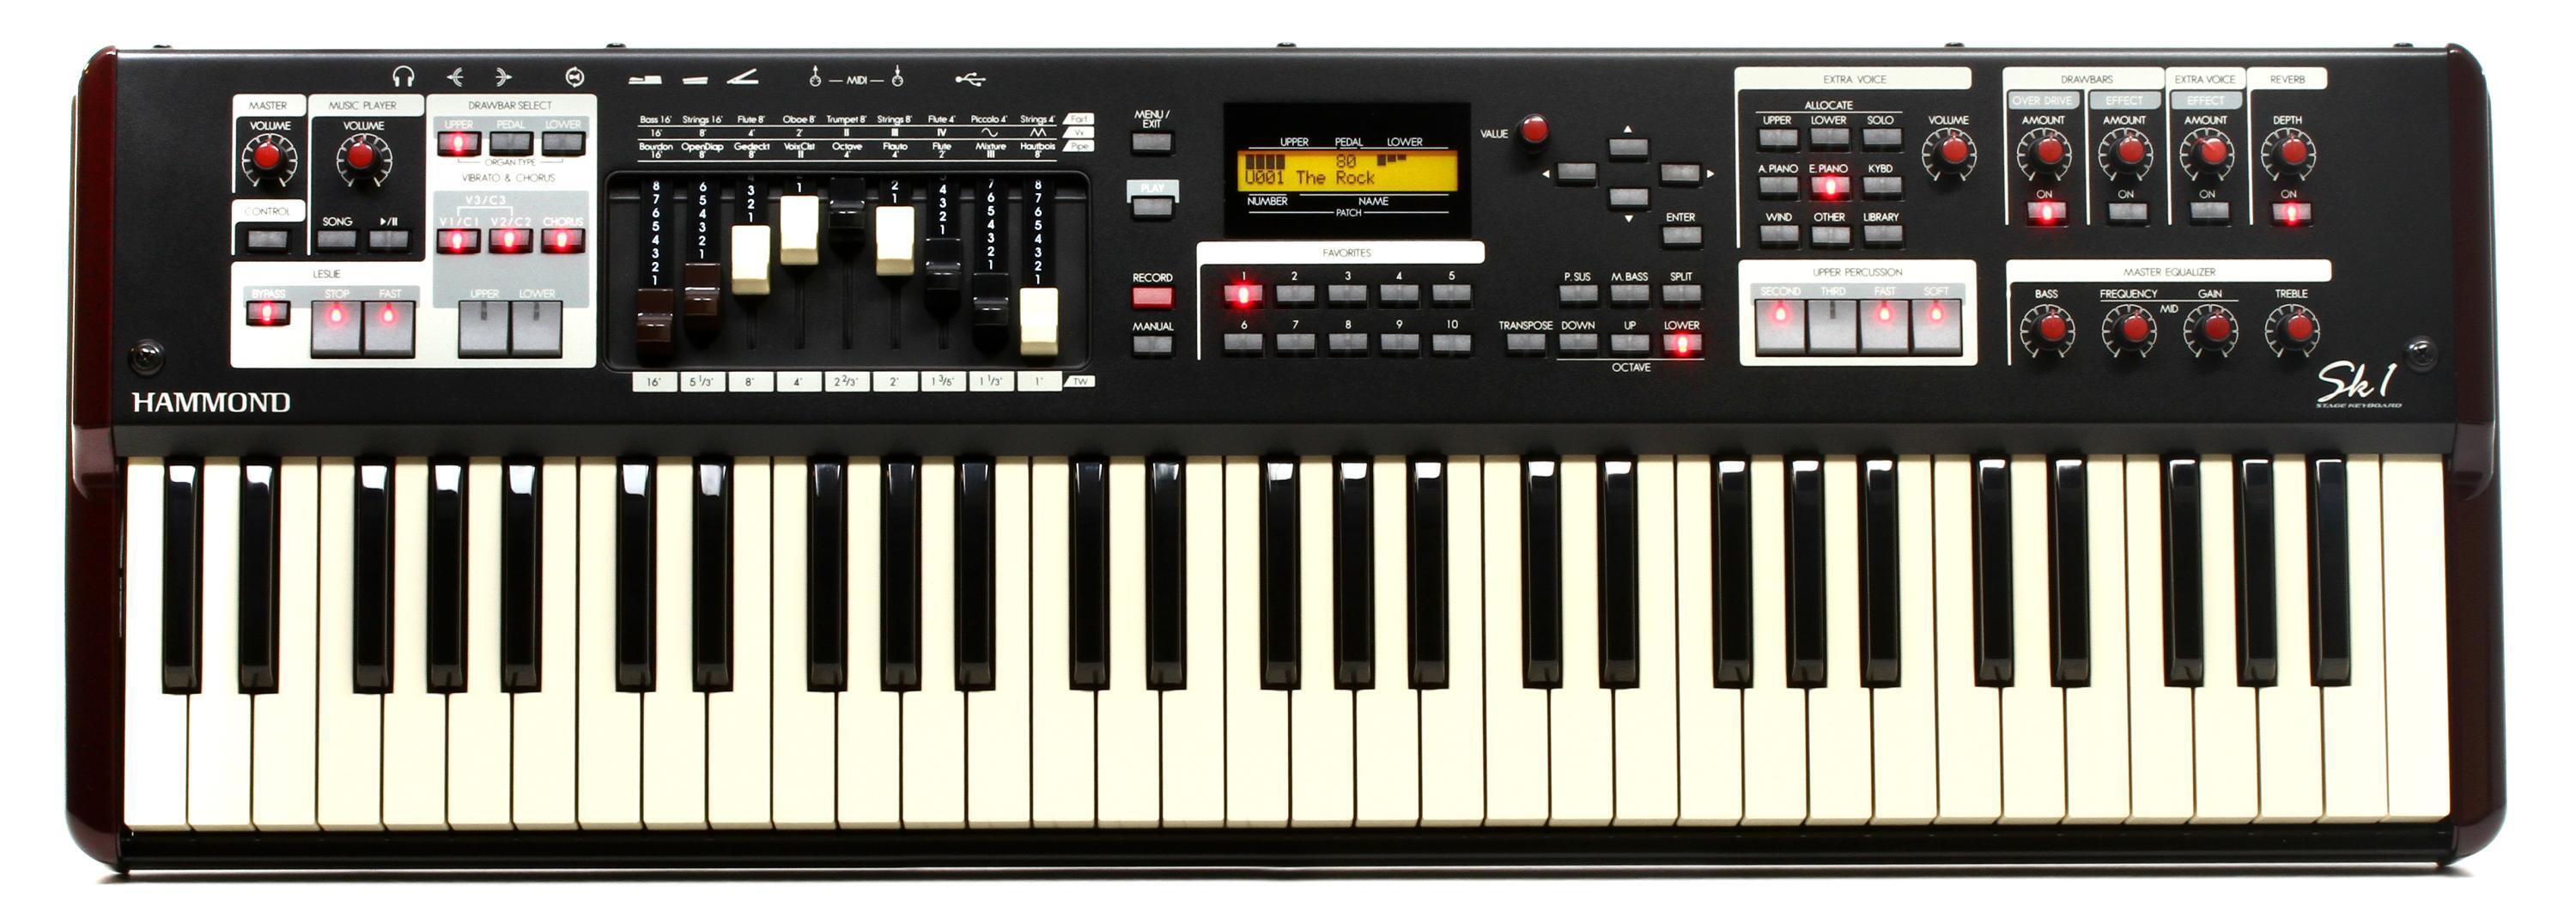 Hammond Sk1 61-key Portable Organ